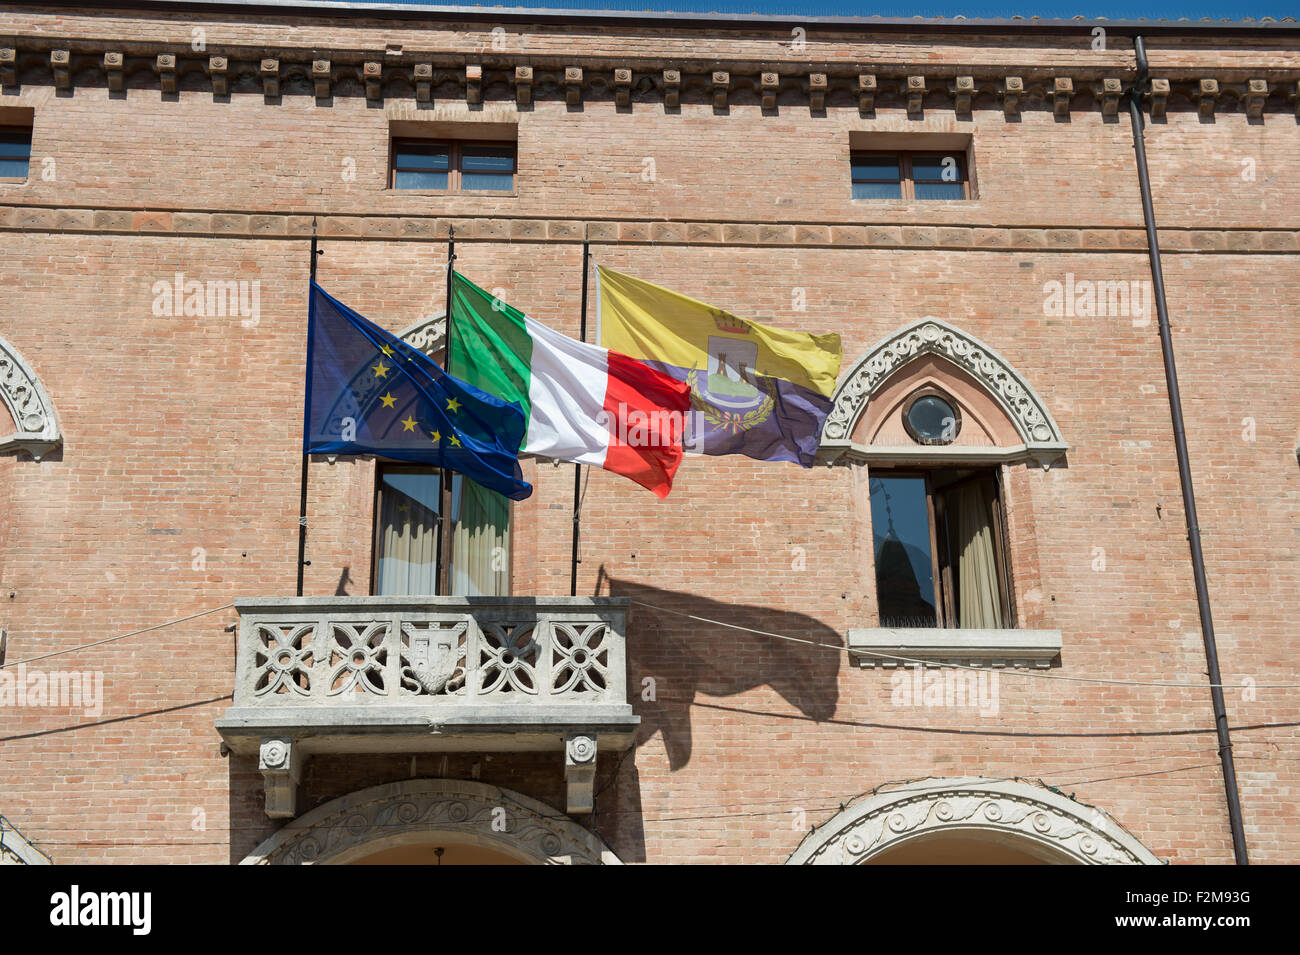 Pays,locale et de l'Union européenne sur le flutter flags de ville de Verucchio, Italie Banque D'Images